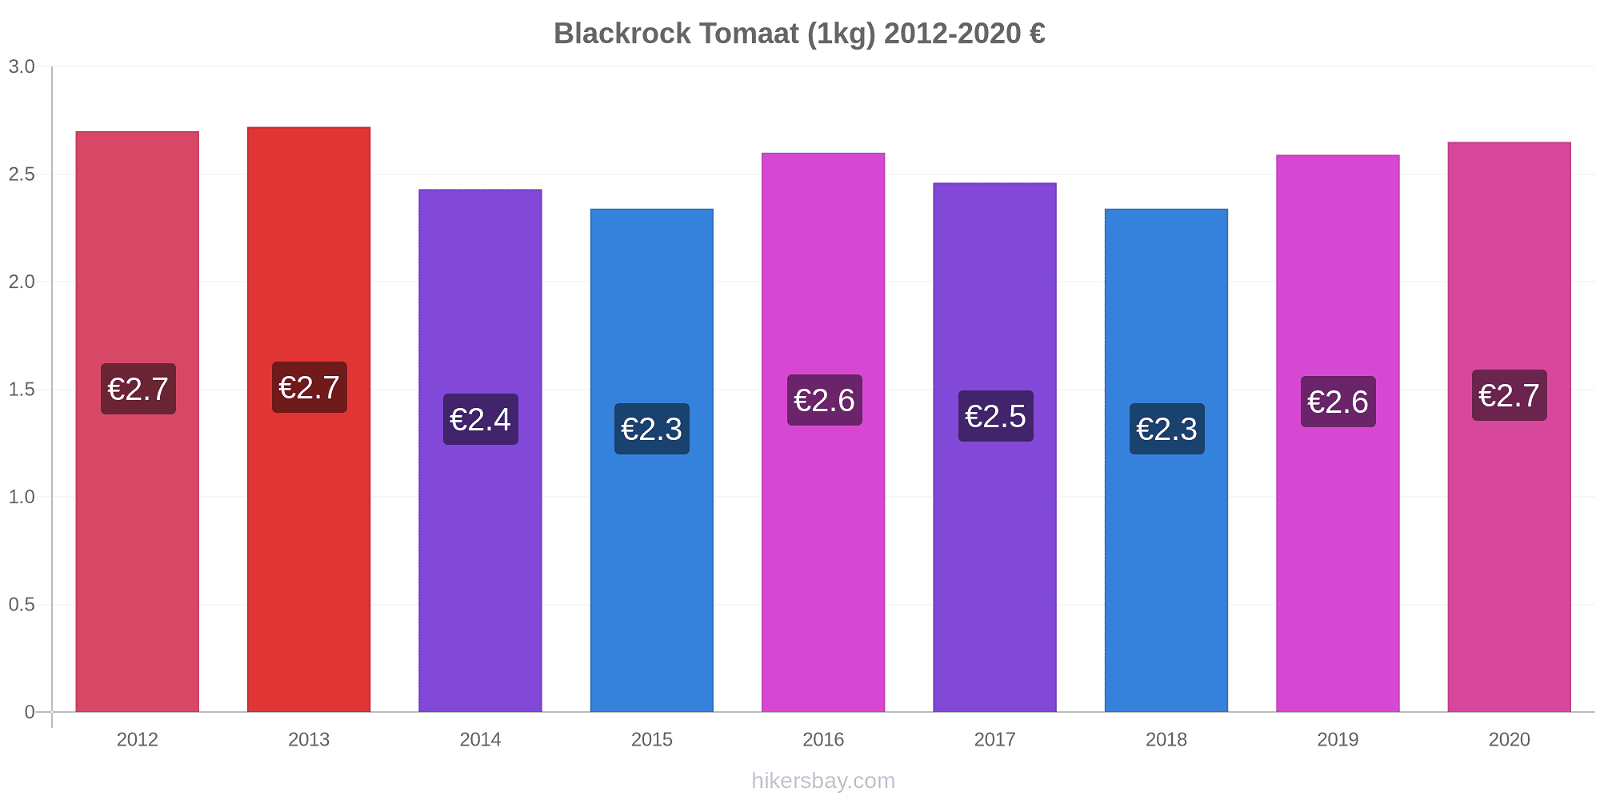 Blackrock prijswijzigingen Tomaat (1kg) hikersbay.com